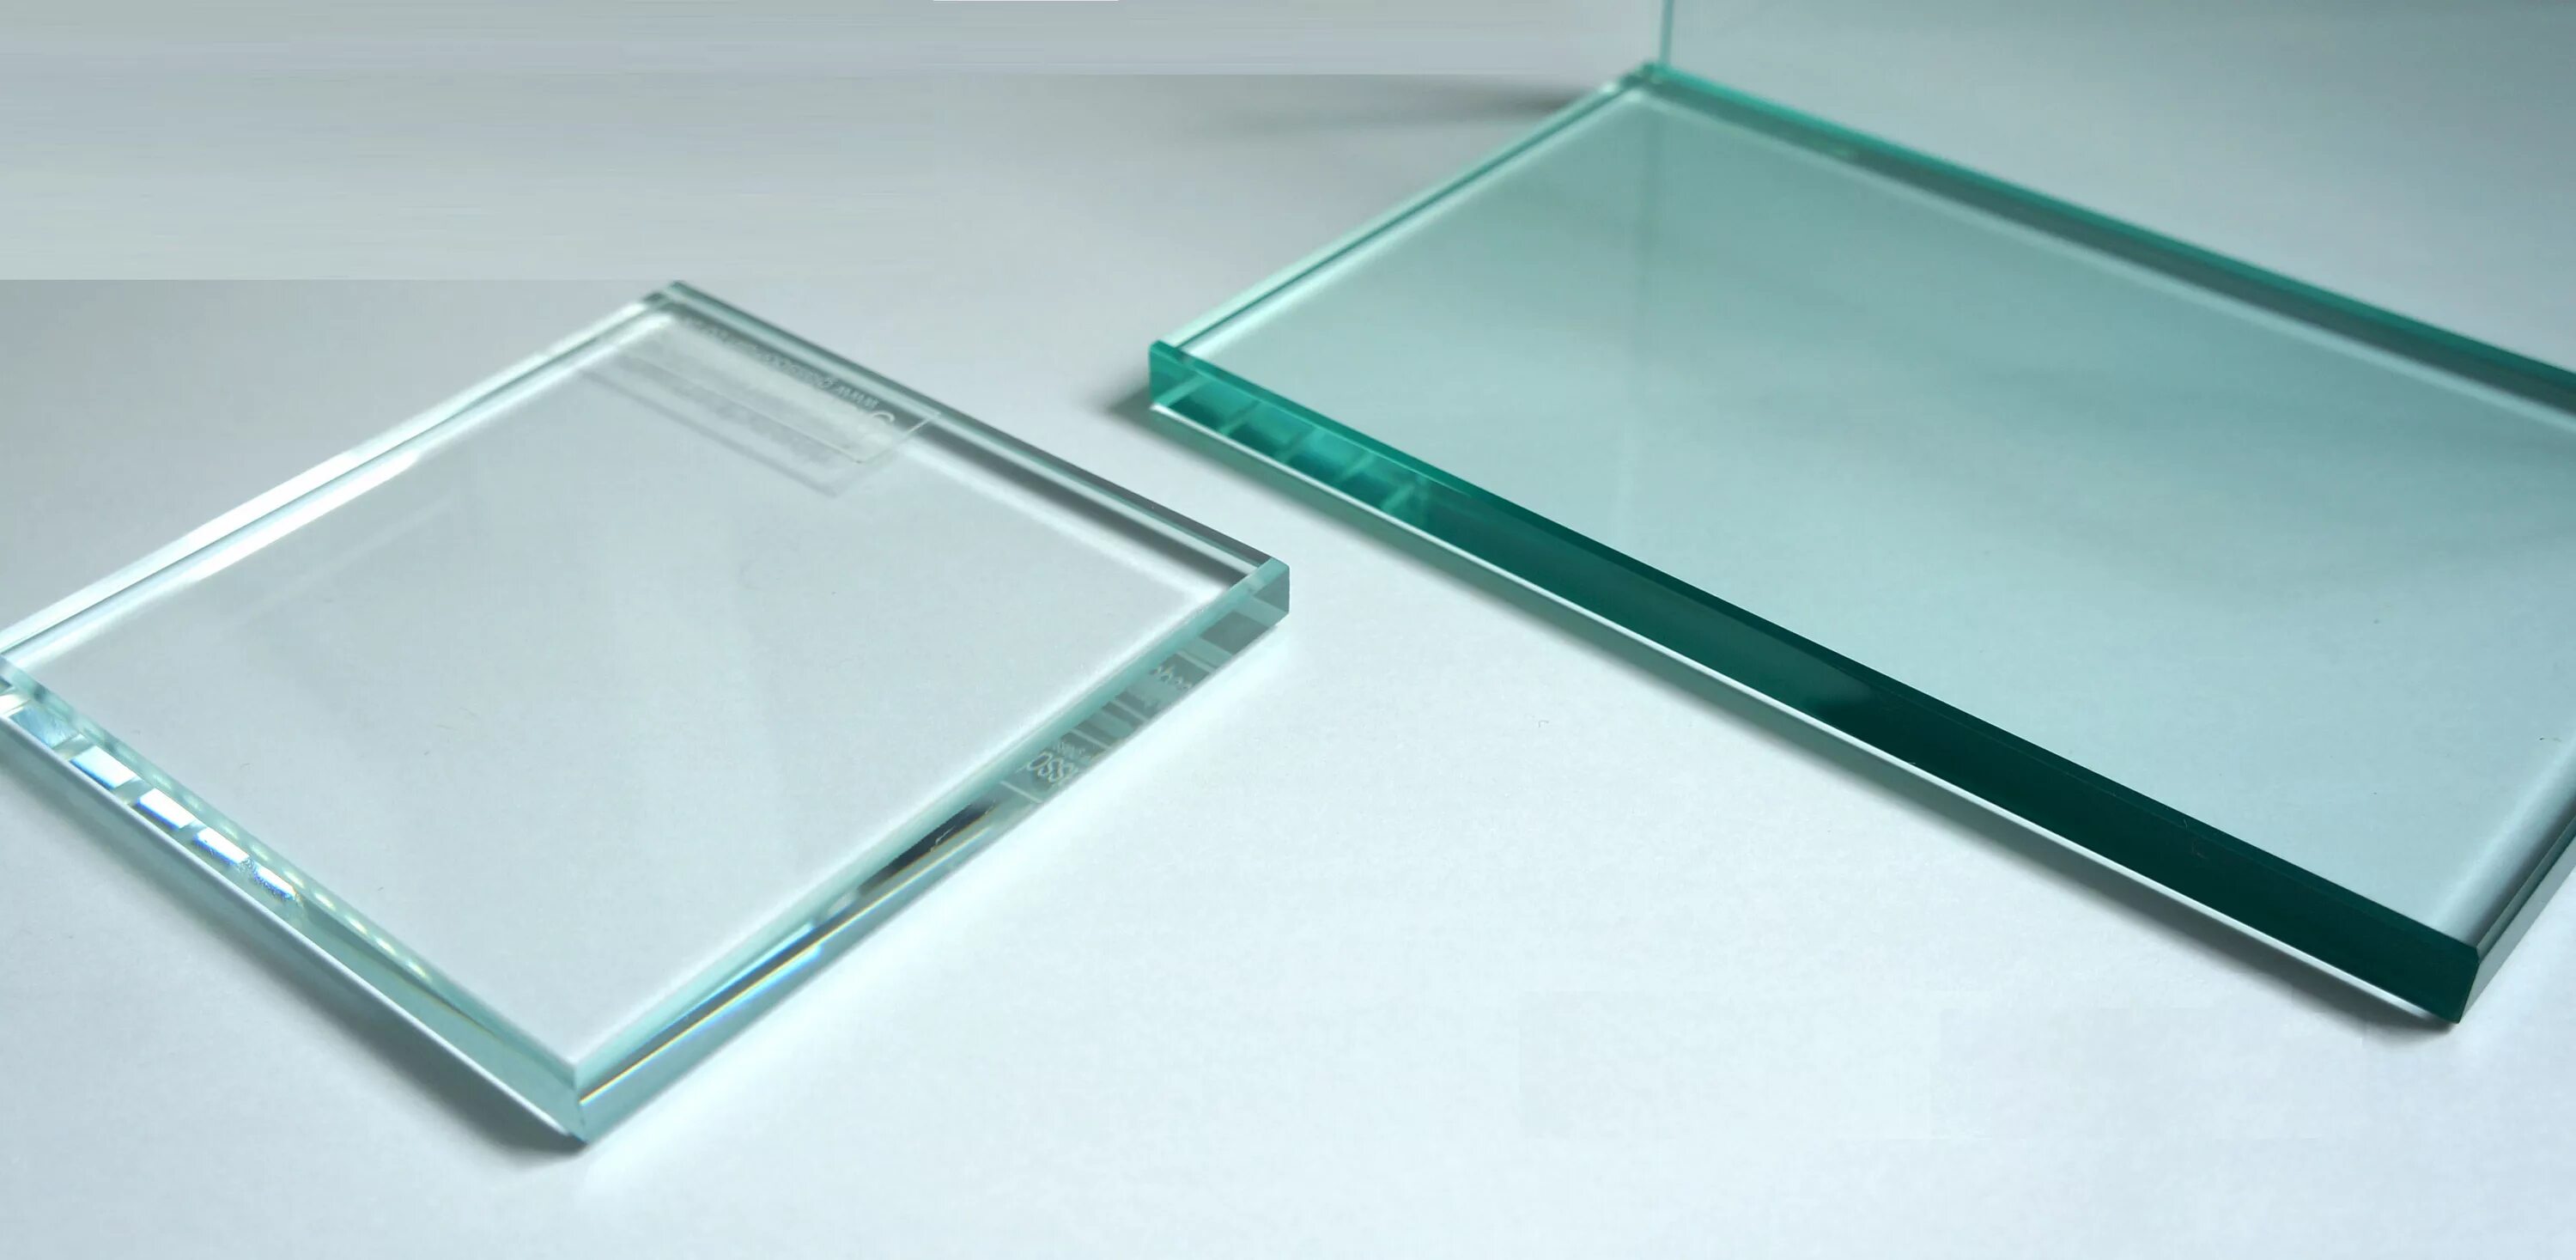 Стекло 4 Planibel Clear. KDM Glass 4503acl стекло. Триплекс оптивайт. Стекло a1316. Стекло м5